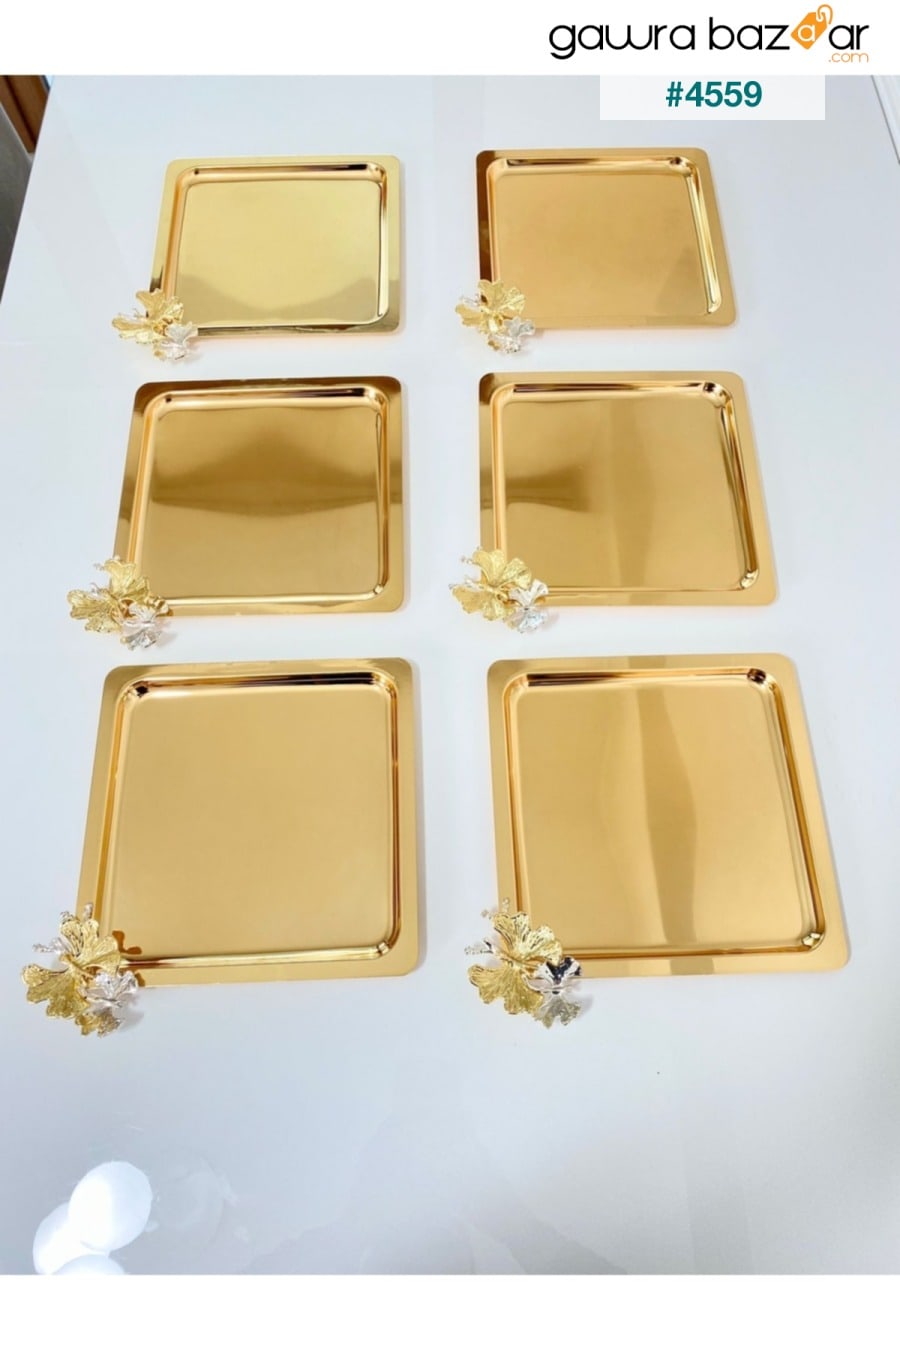 6 قطع لوكس مربعة الشكل مصنوعة من الفولاذ المقاوم للصدأ على شكل فراشة ذهبية ، شاي ، قهوة ، تقديم وصينية تقديم 21x21 سم Milenay 0